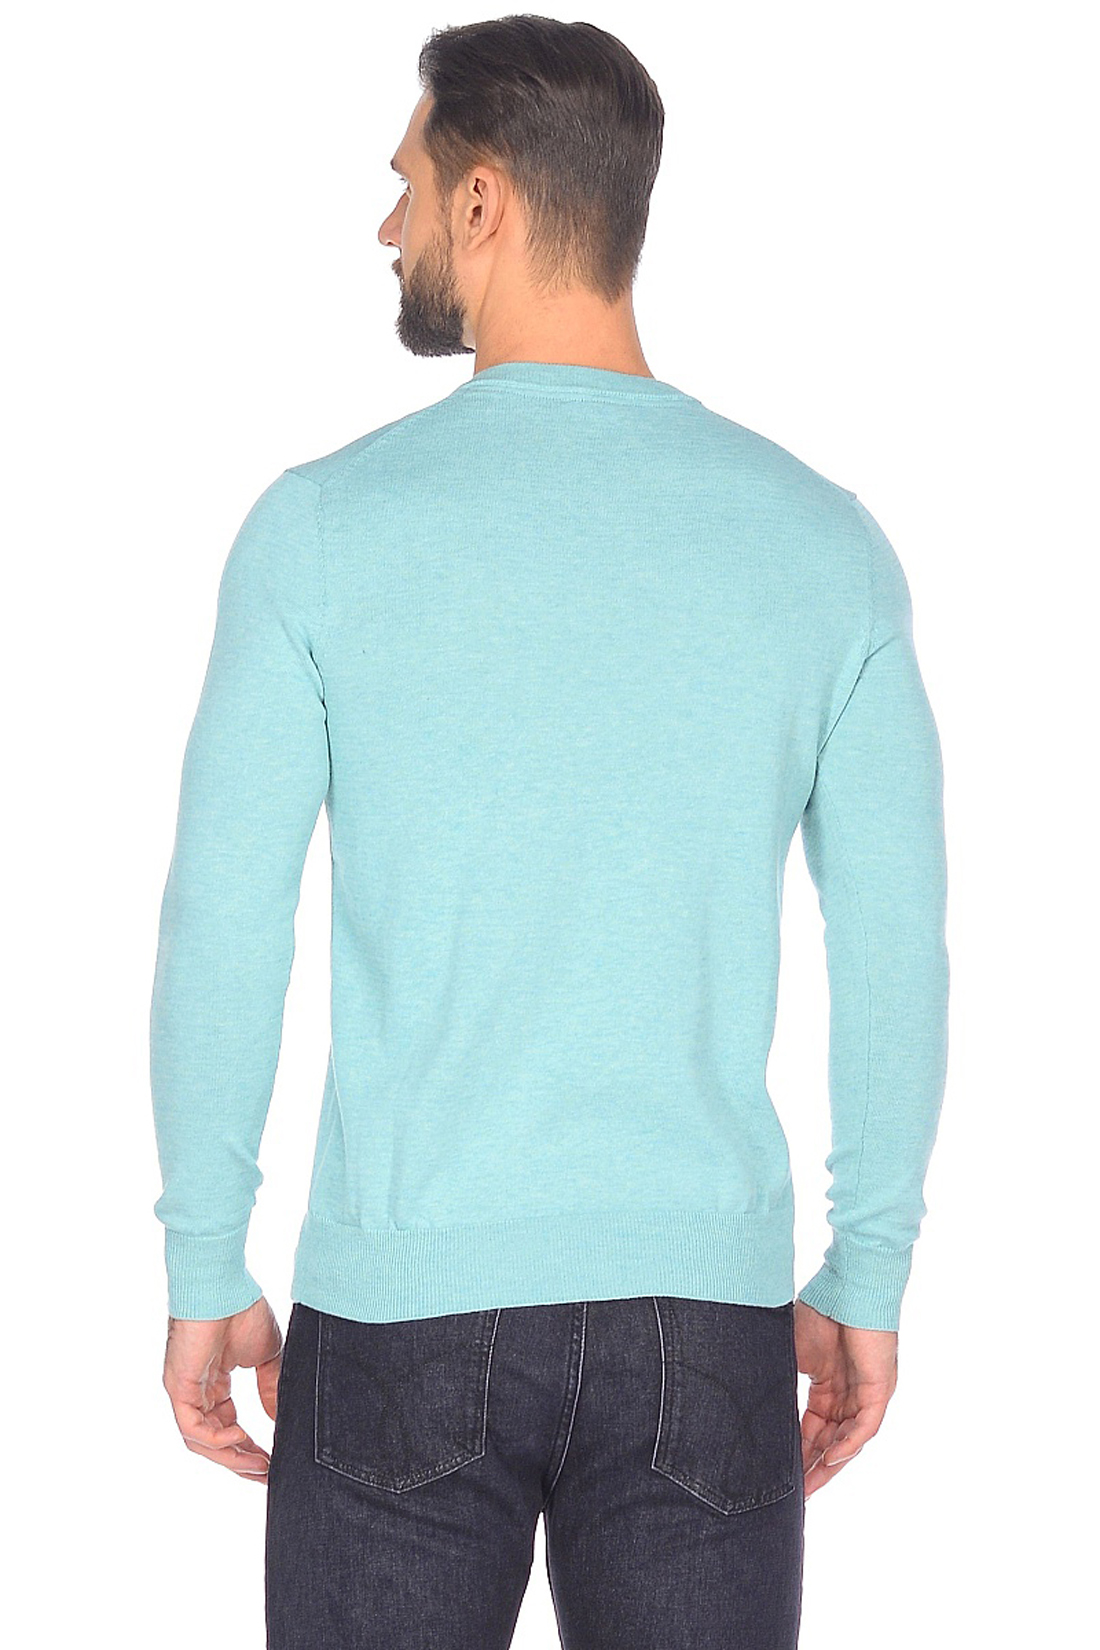 Базовый пуловер (арт. baon B638202), размер XXL, цвет зеленый Базовый пуловер (арт. baon B638202) - фото 2